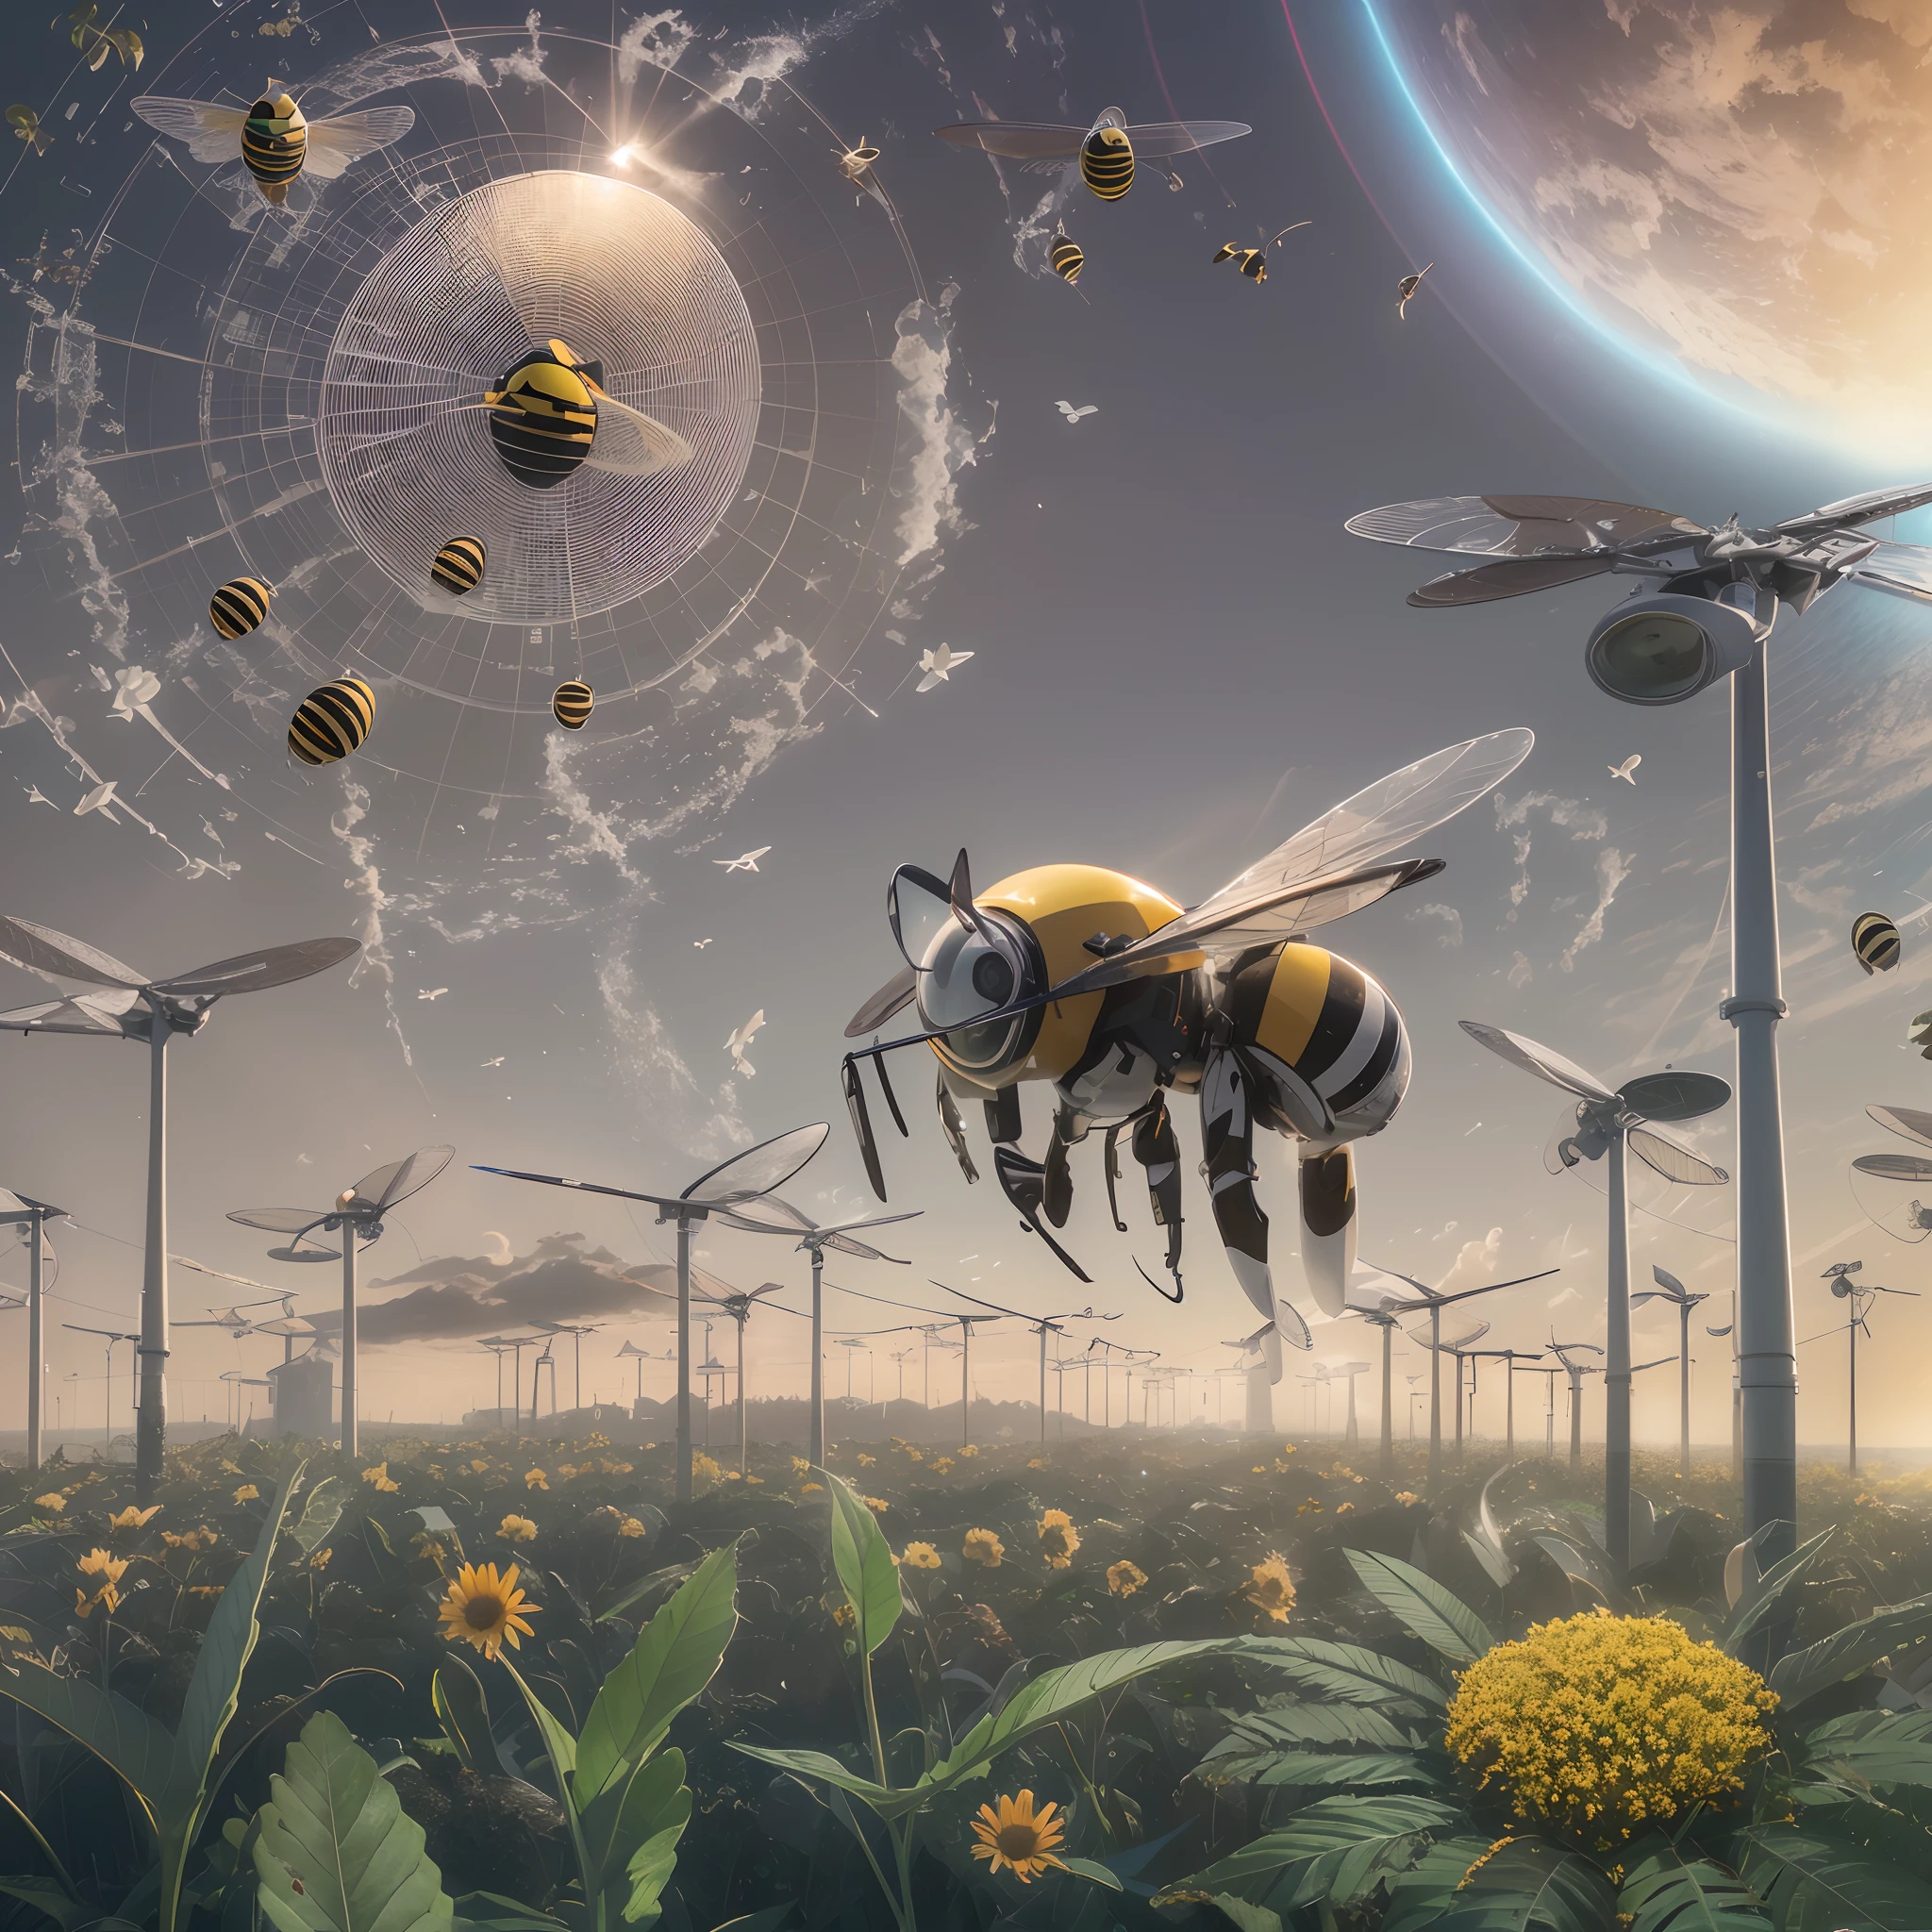 изображение зеленой планеты с солнечными батареями и летающей над ней пчелой, cleaning будущее, 8К cleaning будущее, 16 k cleaning будущее, обложка, будущее concept art, near будущее 2 0 3 0, near будущее, экологический портрет, солнечная энергия!!!, Экологический концепт-арт, будущее, солнечная энергия будущее, официальное искусство, солнечная энергия, обложка, красивый, острый, Кинематографический, легко конвертировать в видео,16К, 8К , и использовать в нем любого человека --auto